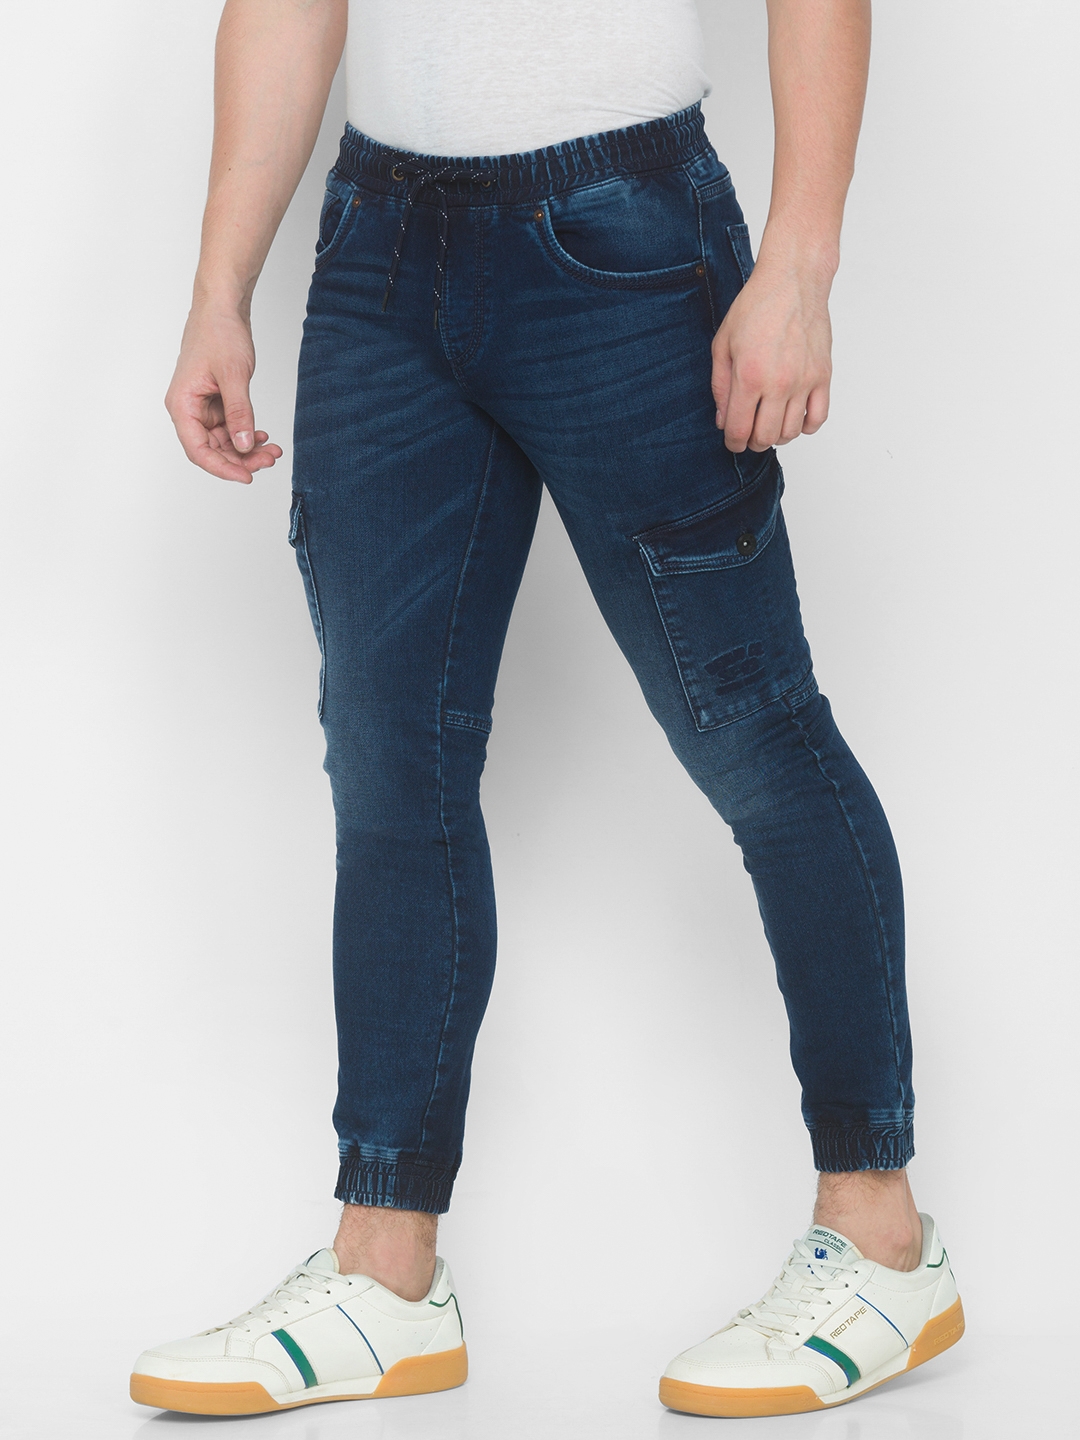 Spykar | Men's Blue Cotton Solid Joggers Jeans 4